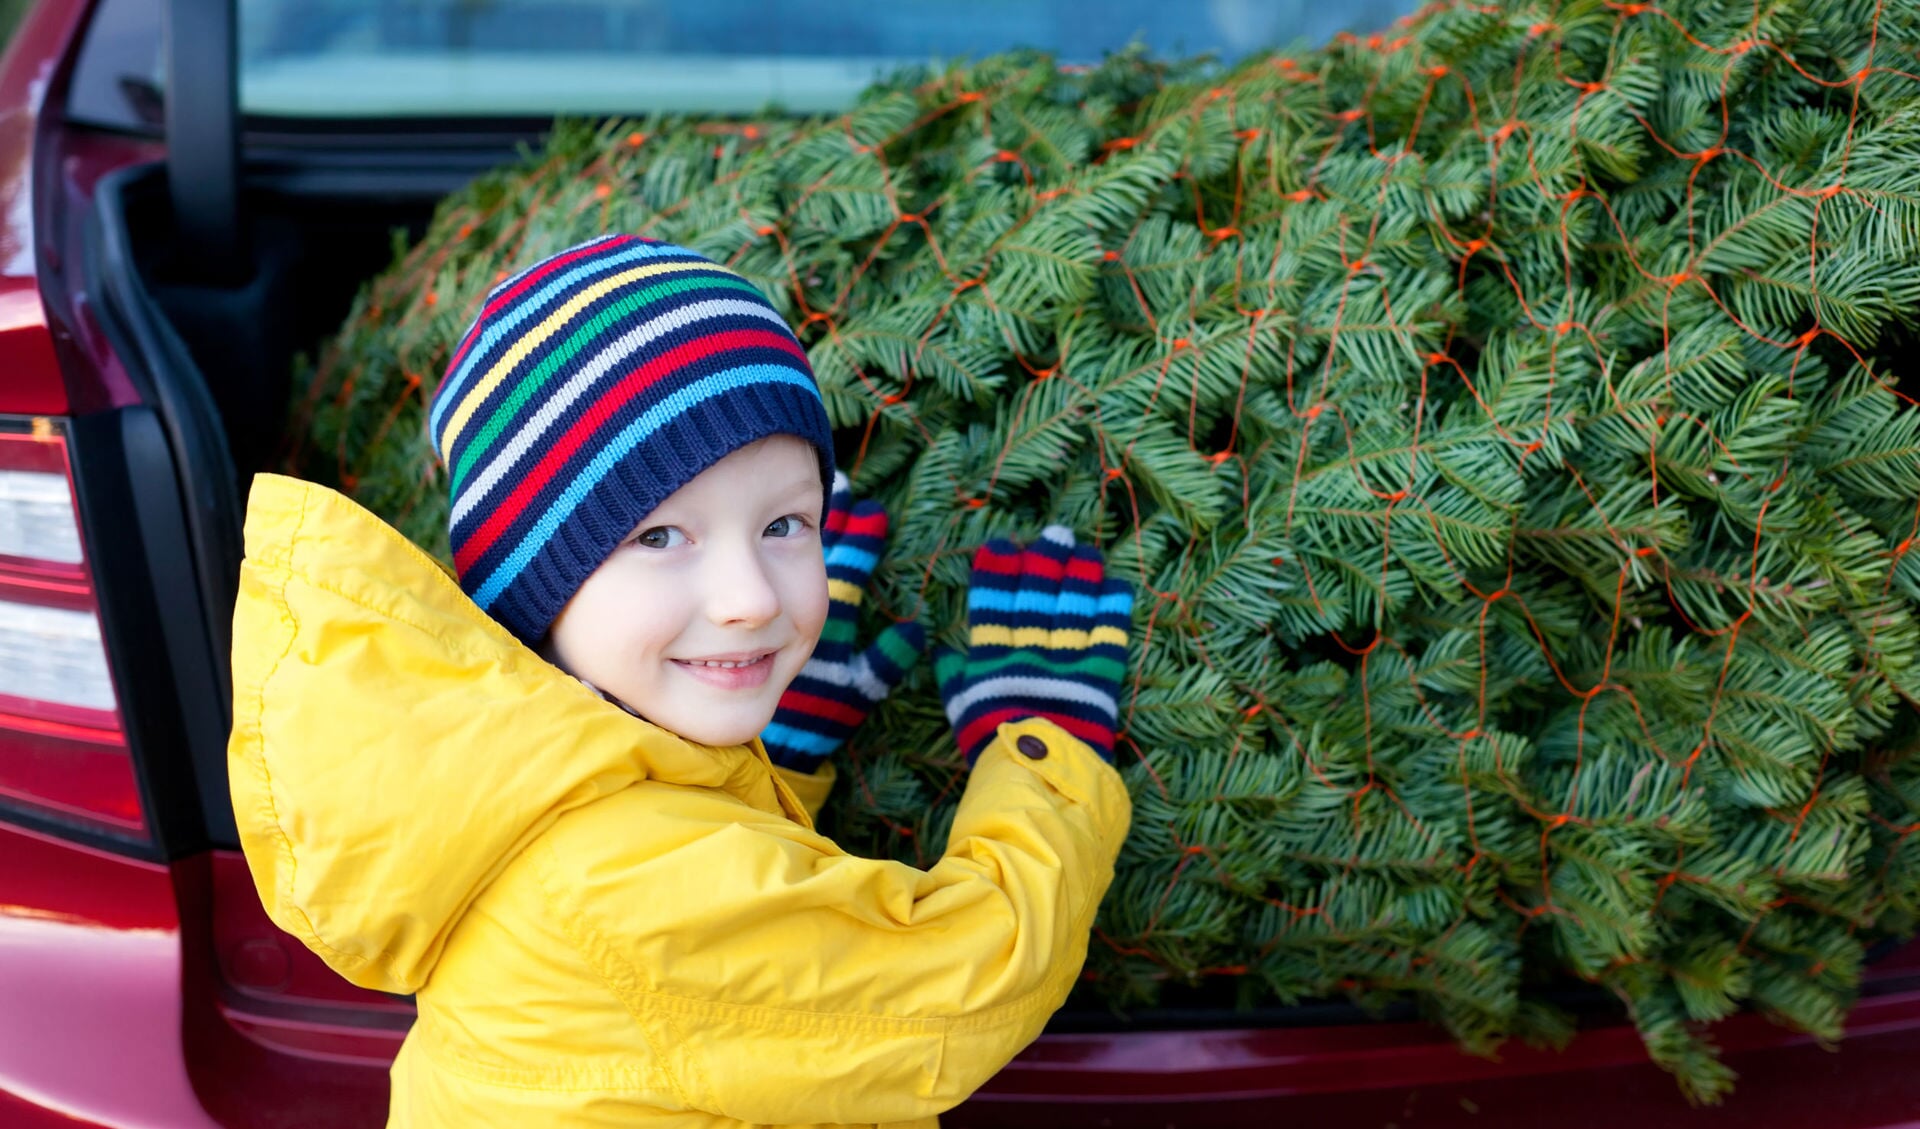 Kerstboom inleveren in Krimpen aan den IJssel kan op woensdag 5 januari.